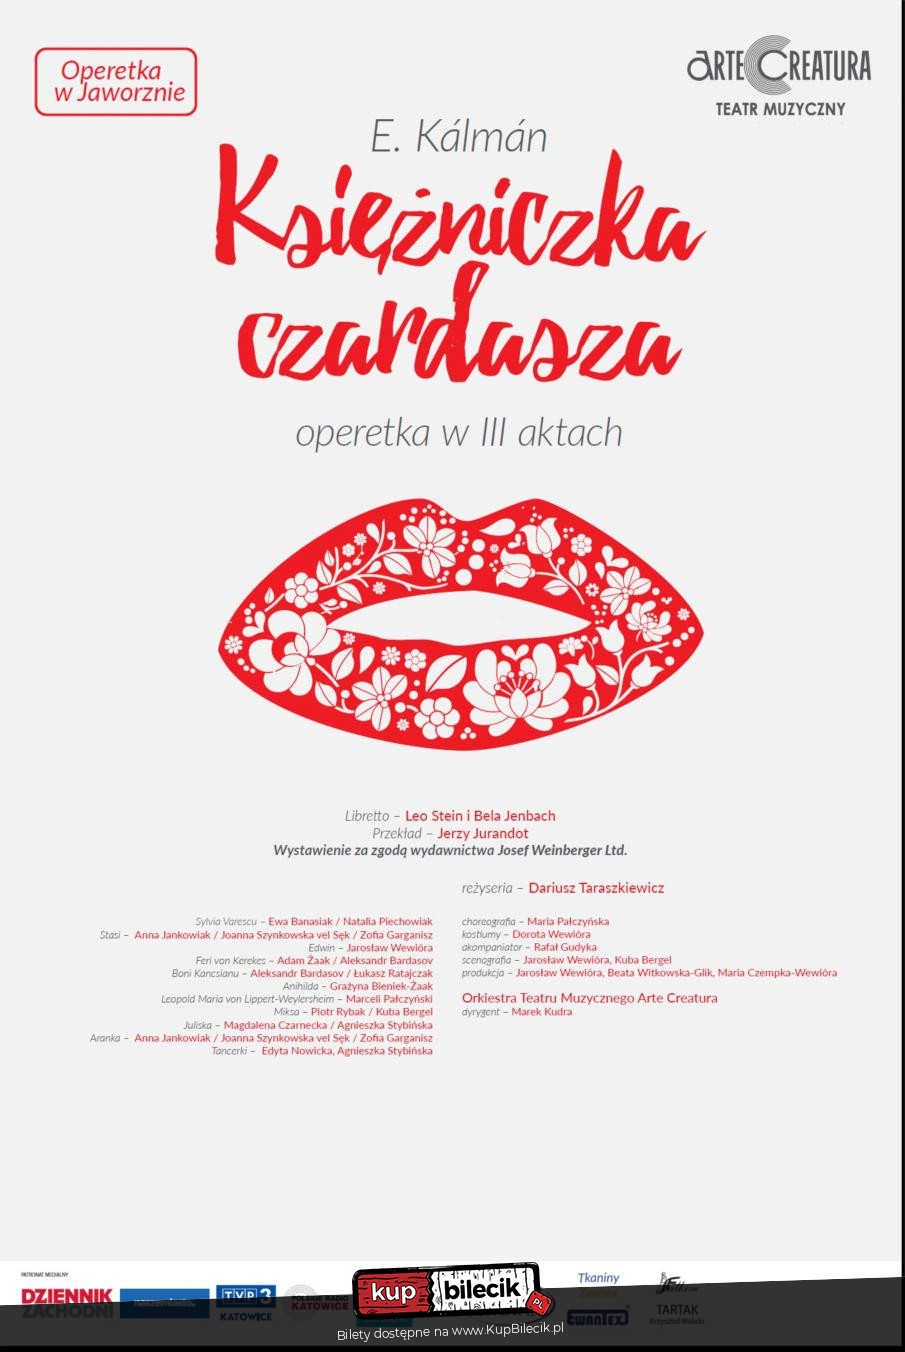 Plakat Księżniczka czardasza I.Kalman operetka - Arte Creatura Teatr Muzyczny 112632